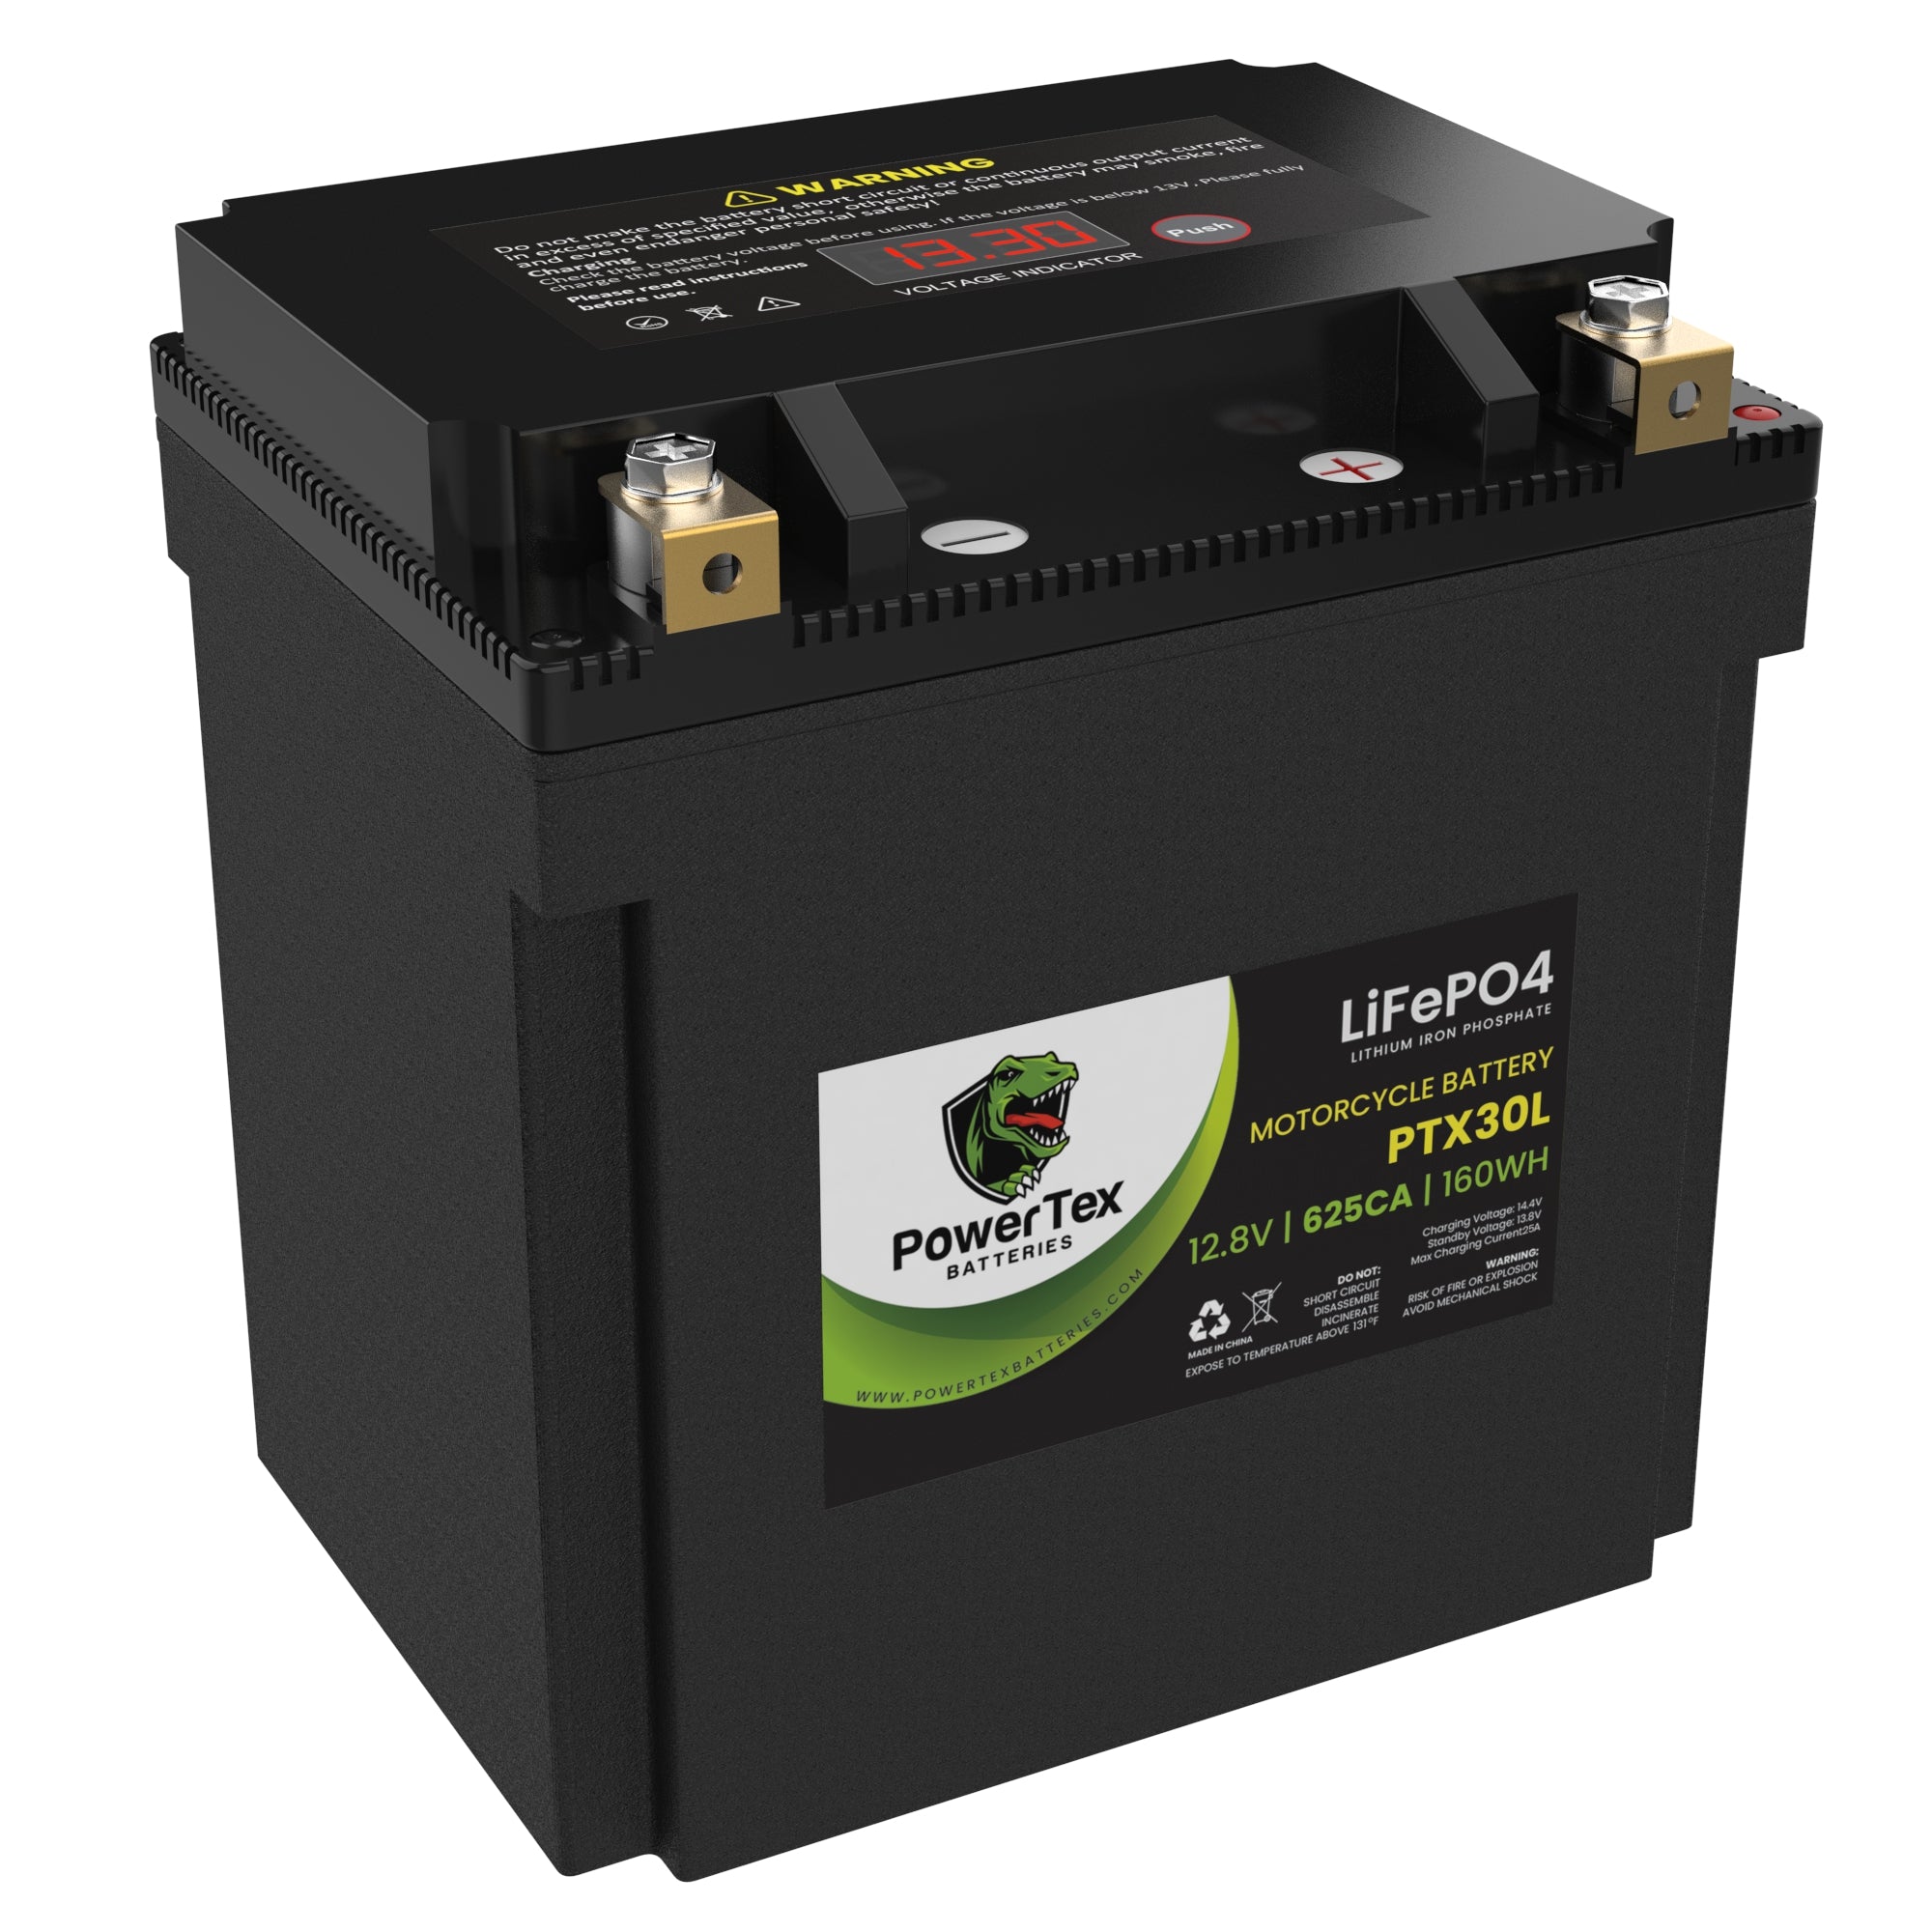 Motorcycle Batteries – PowerTex Batteries